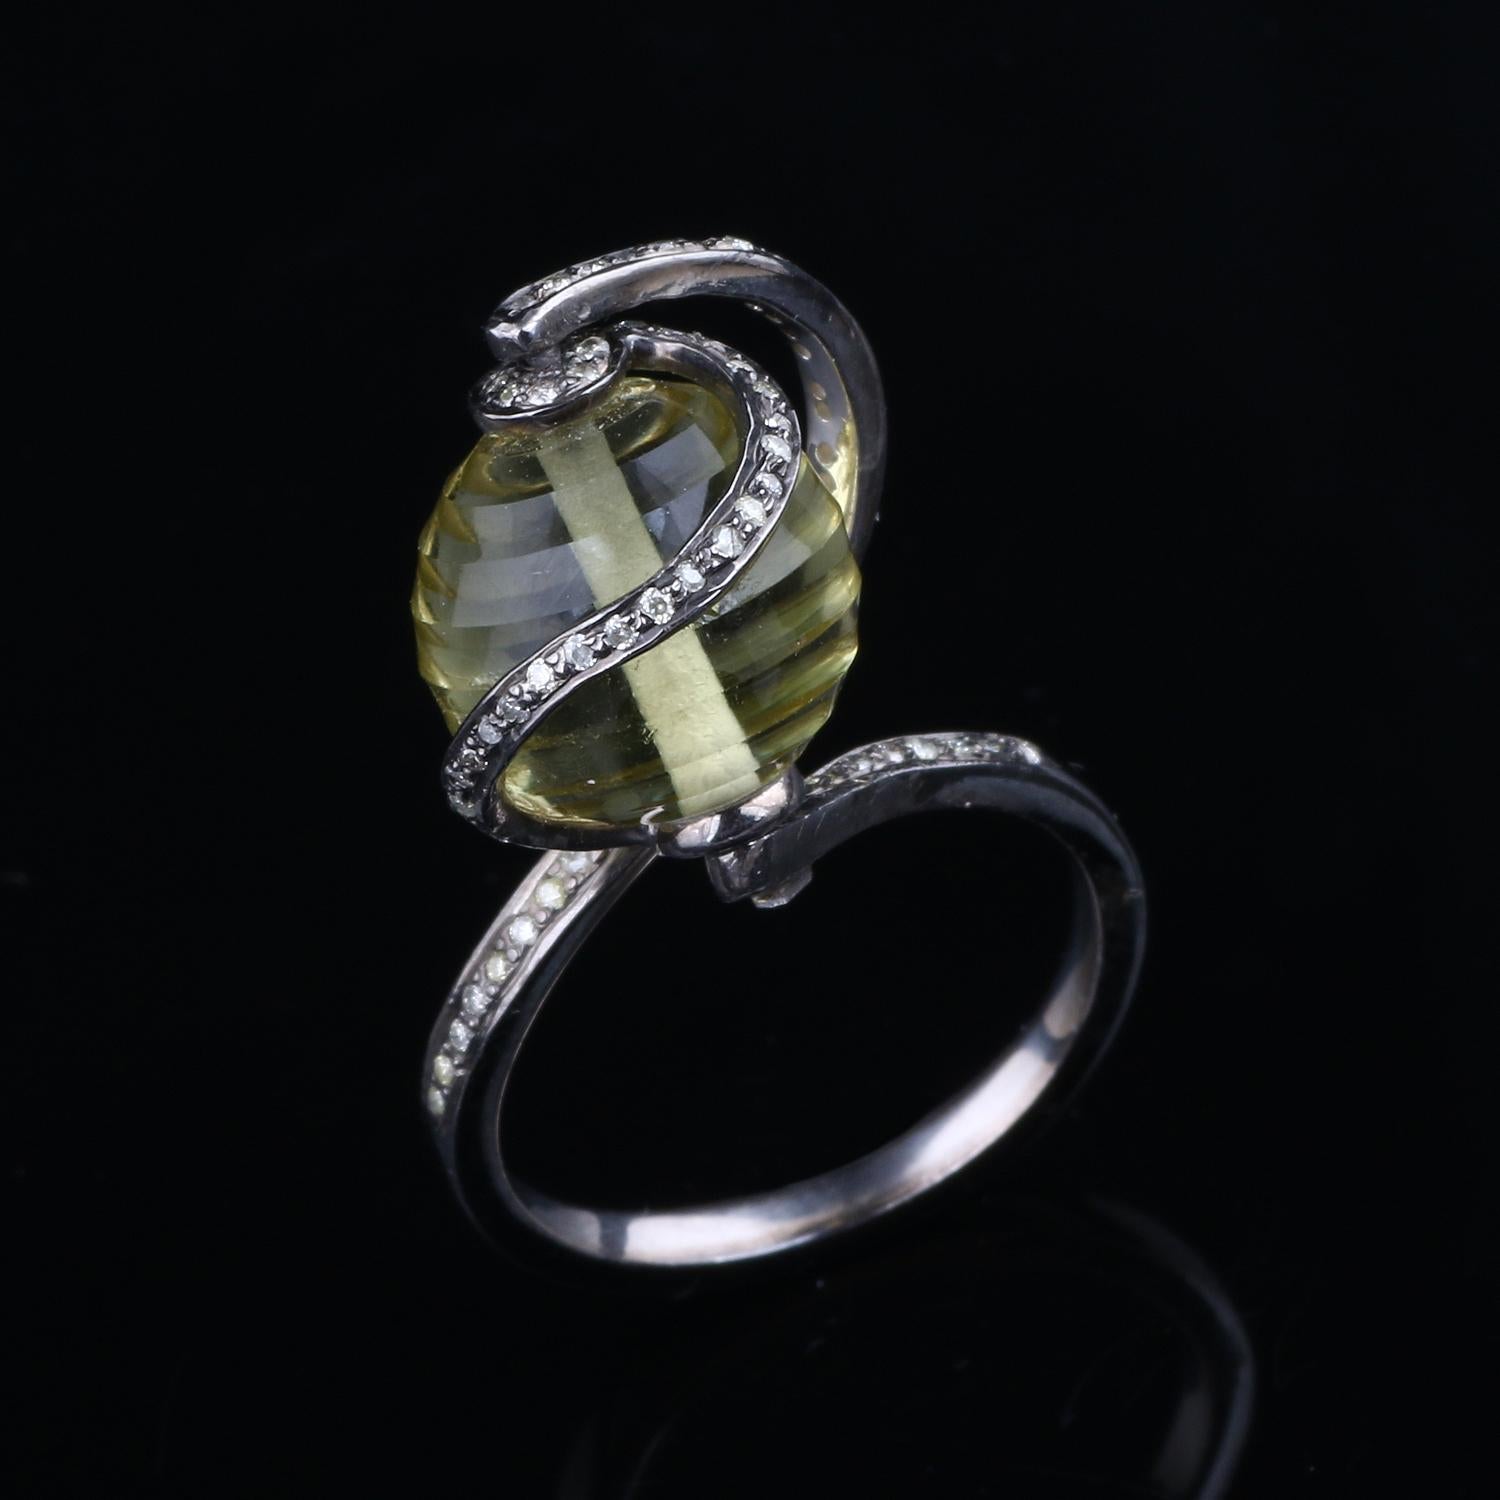 Détails de l'article:-

✦ SKU:- ESRG00203

✦ Material :- Silver
✦ Gemstone Specification:-
✧ Diamant
✧ Lemon Quartz

✦ Approx. Poids du diamant : 0,3
✦ Approx. Argent Poids : 3.69
✦ Approx. Poids brut : 6,3

Taille de la bague (US) : 8

Vous